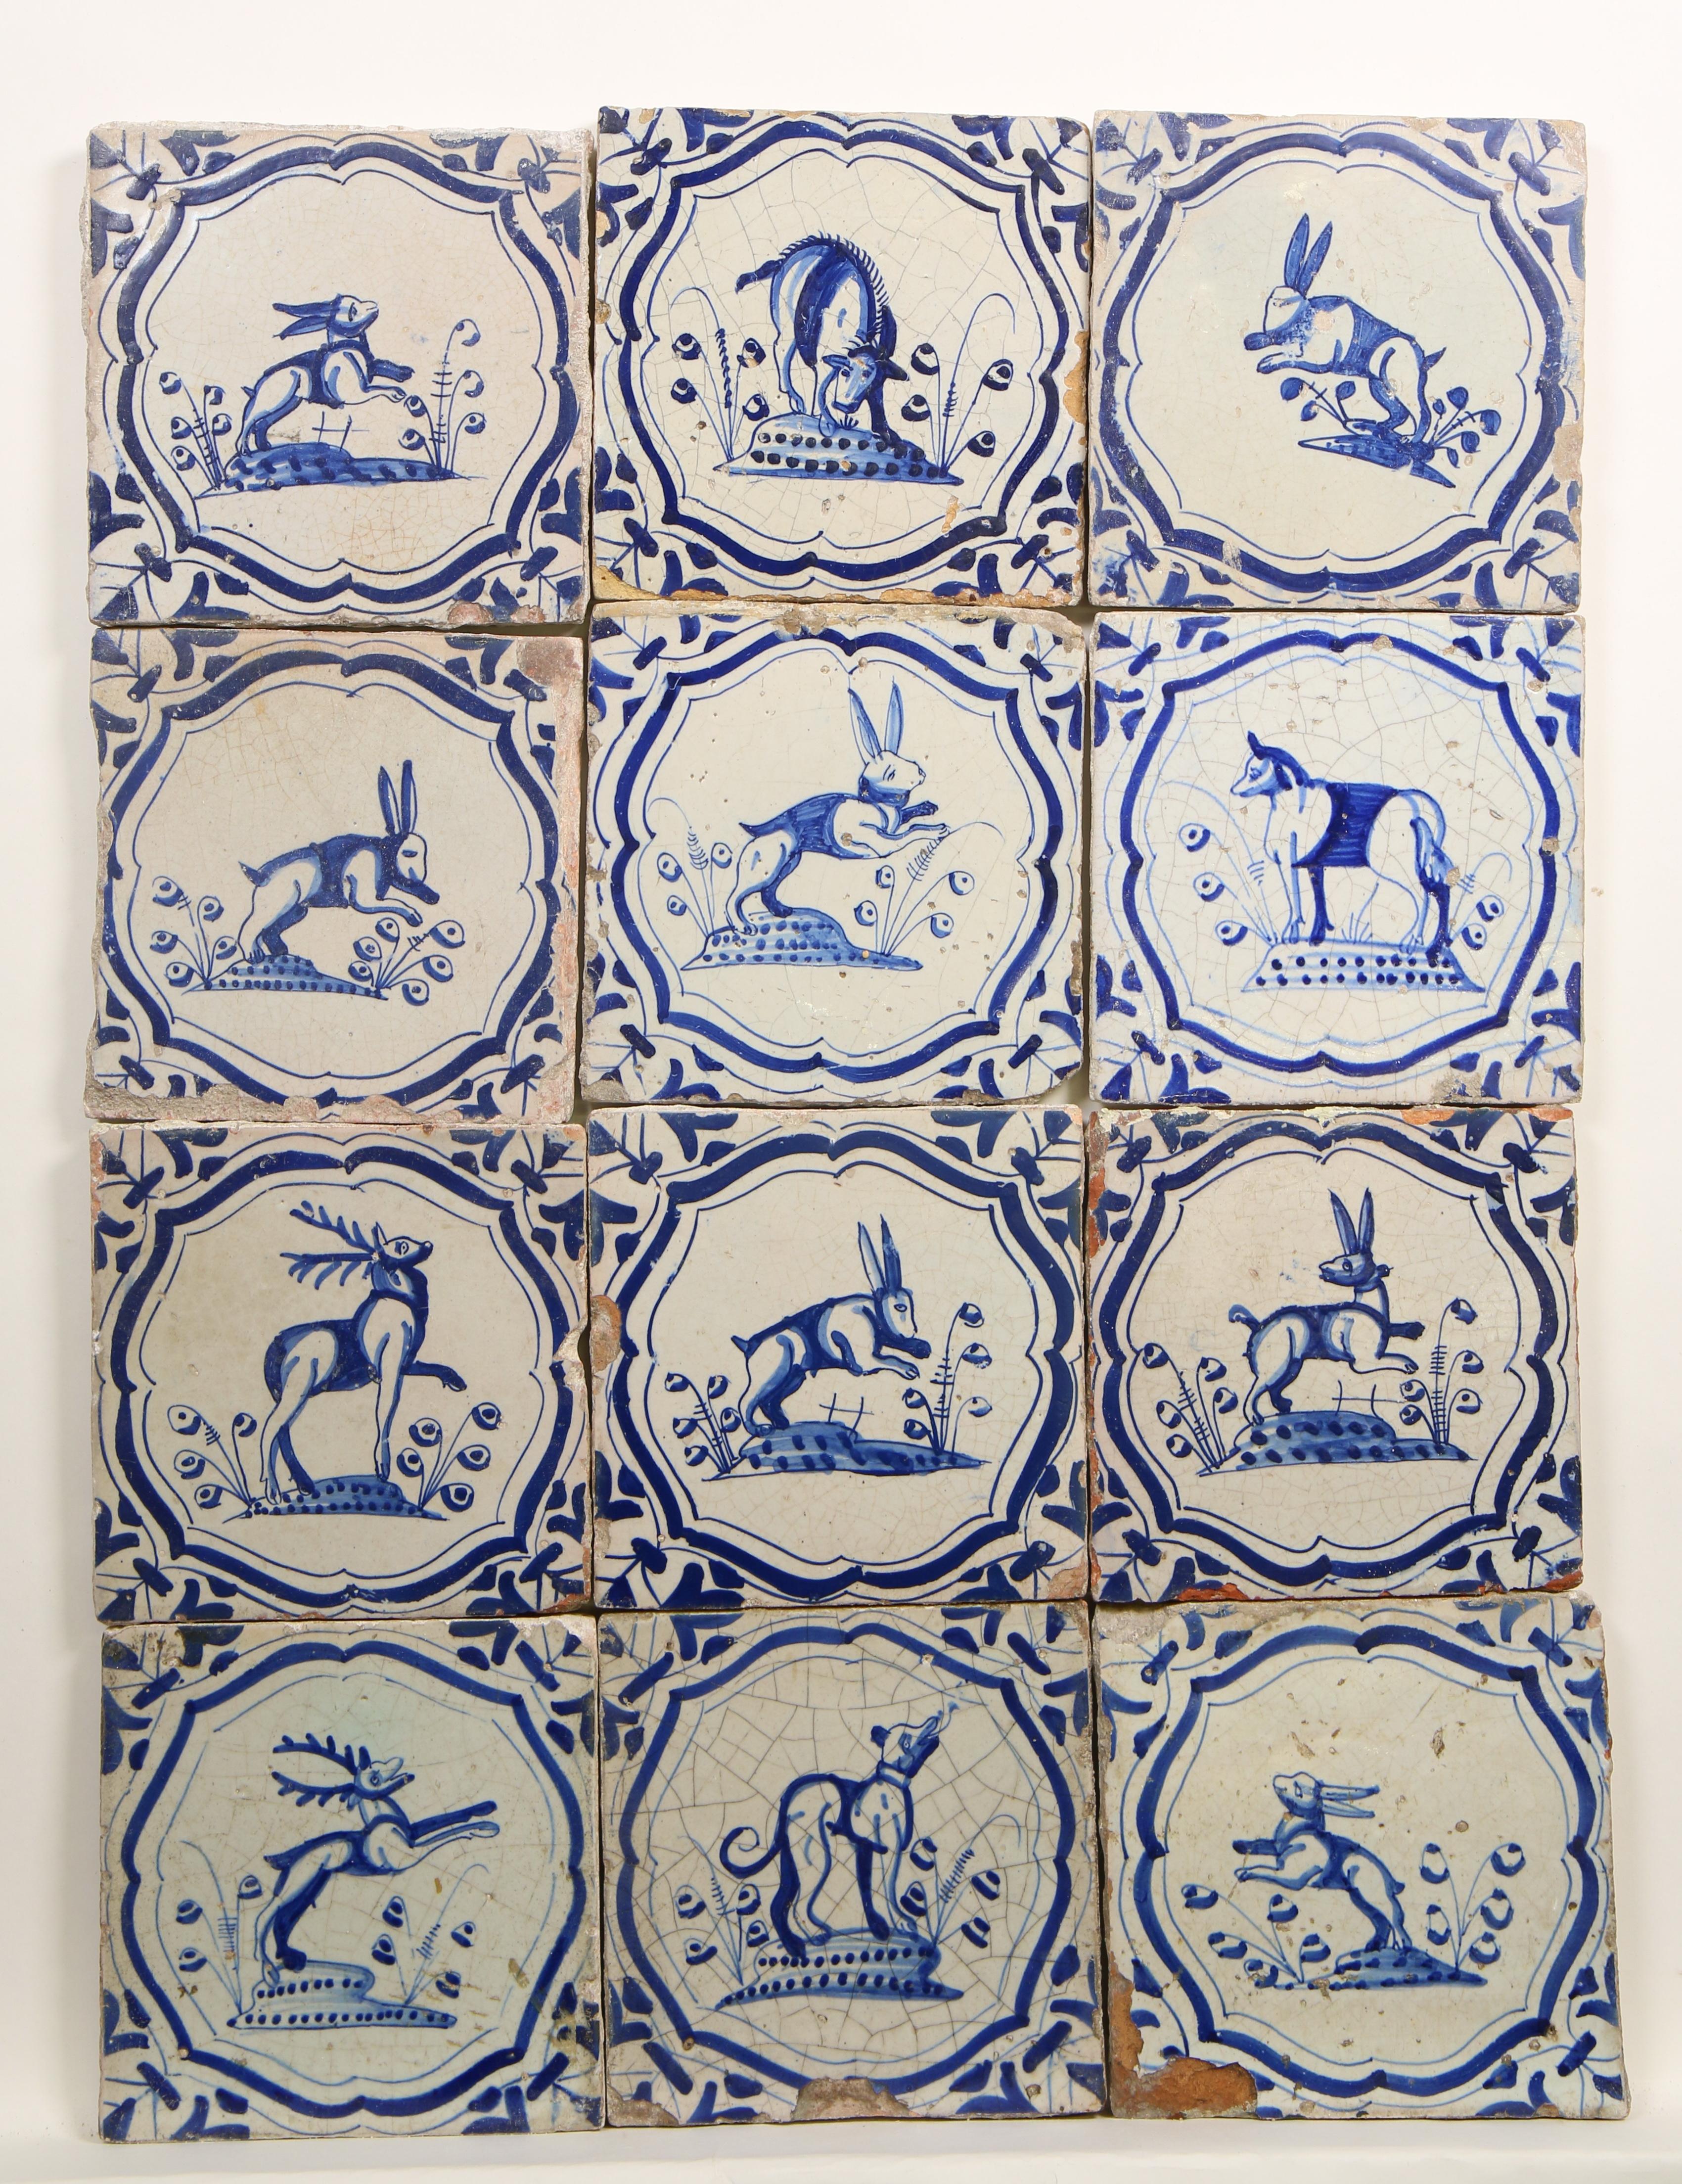 Twaalf blauw aardewerk dierendecor tegels, 1625-1650,